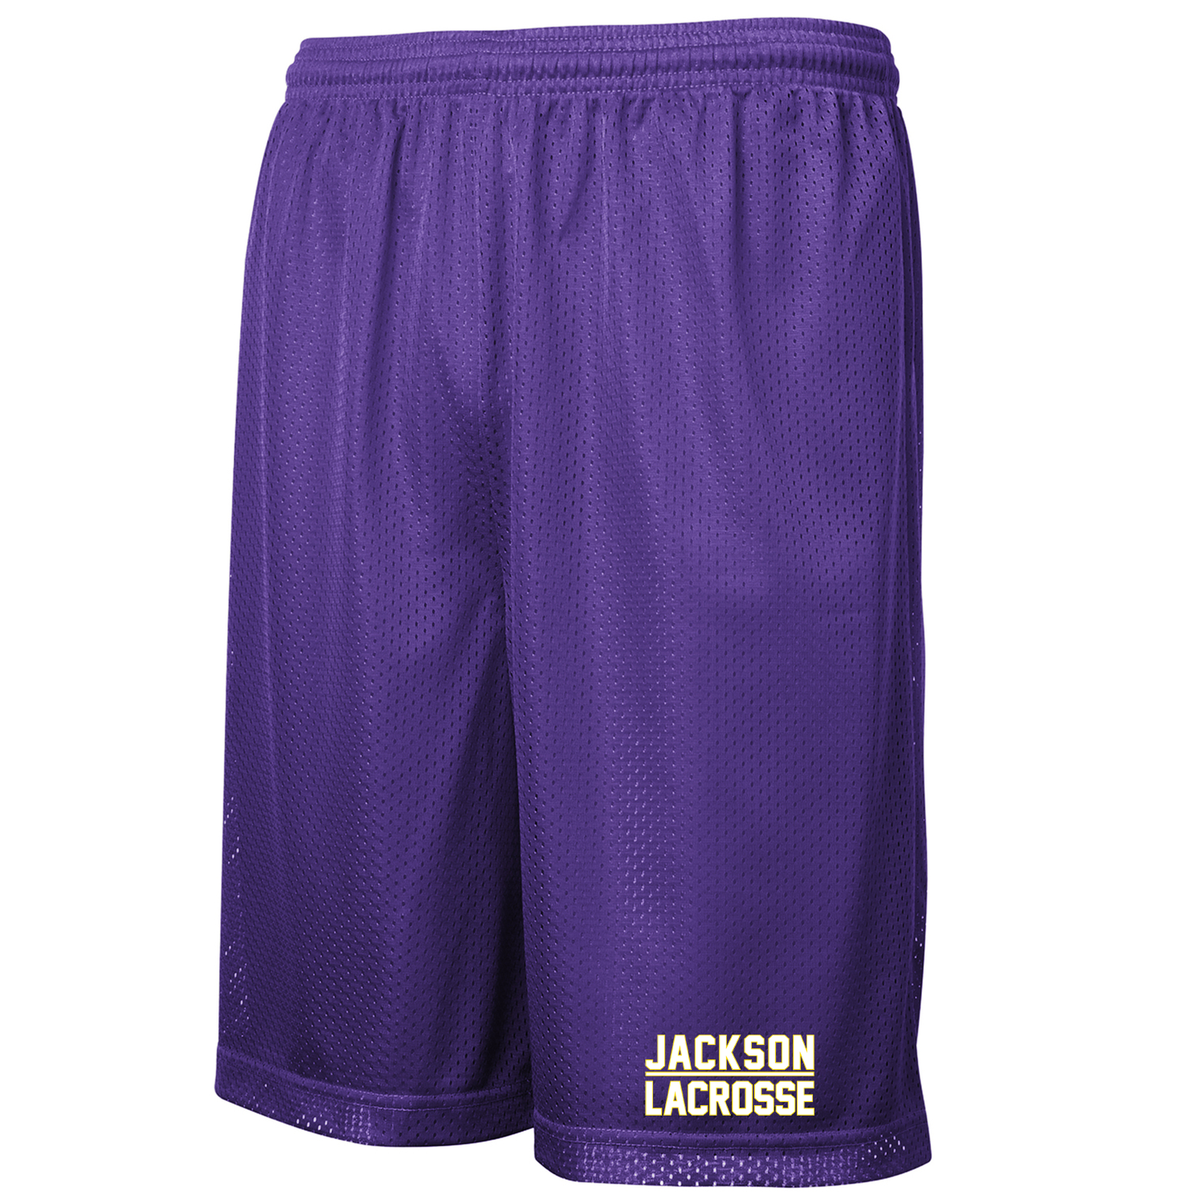 Jackson Lacrosse Classic Mesh Shorts